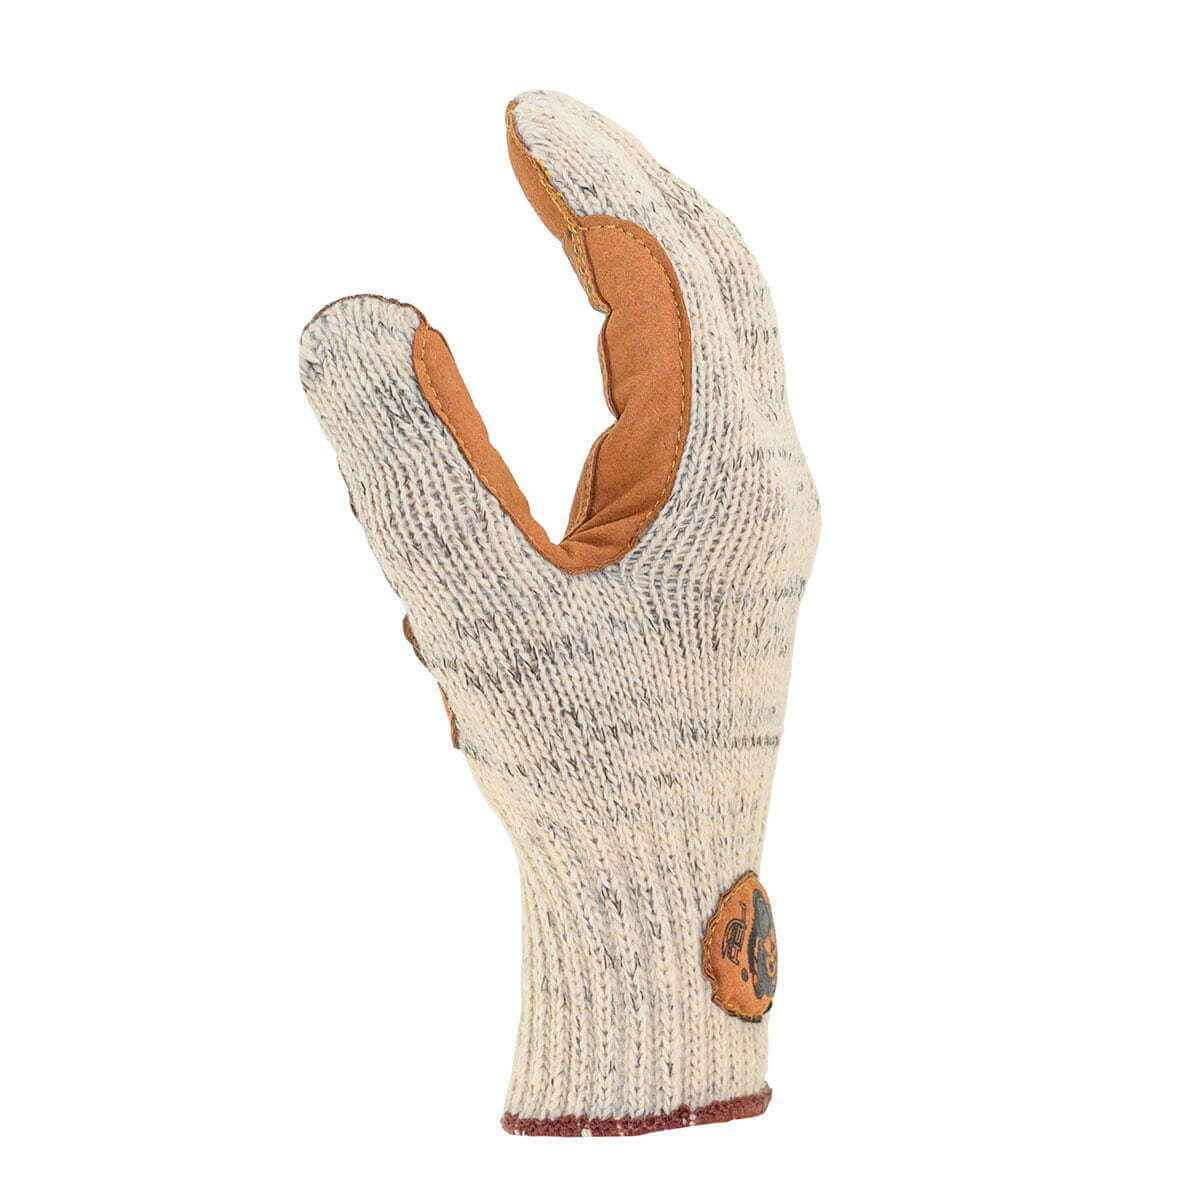 Fish Monkey Gripper Glove L/XL